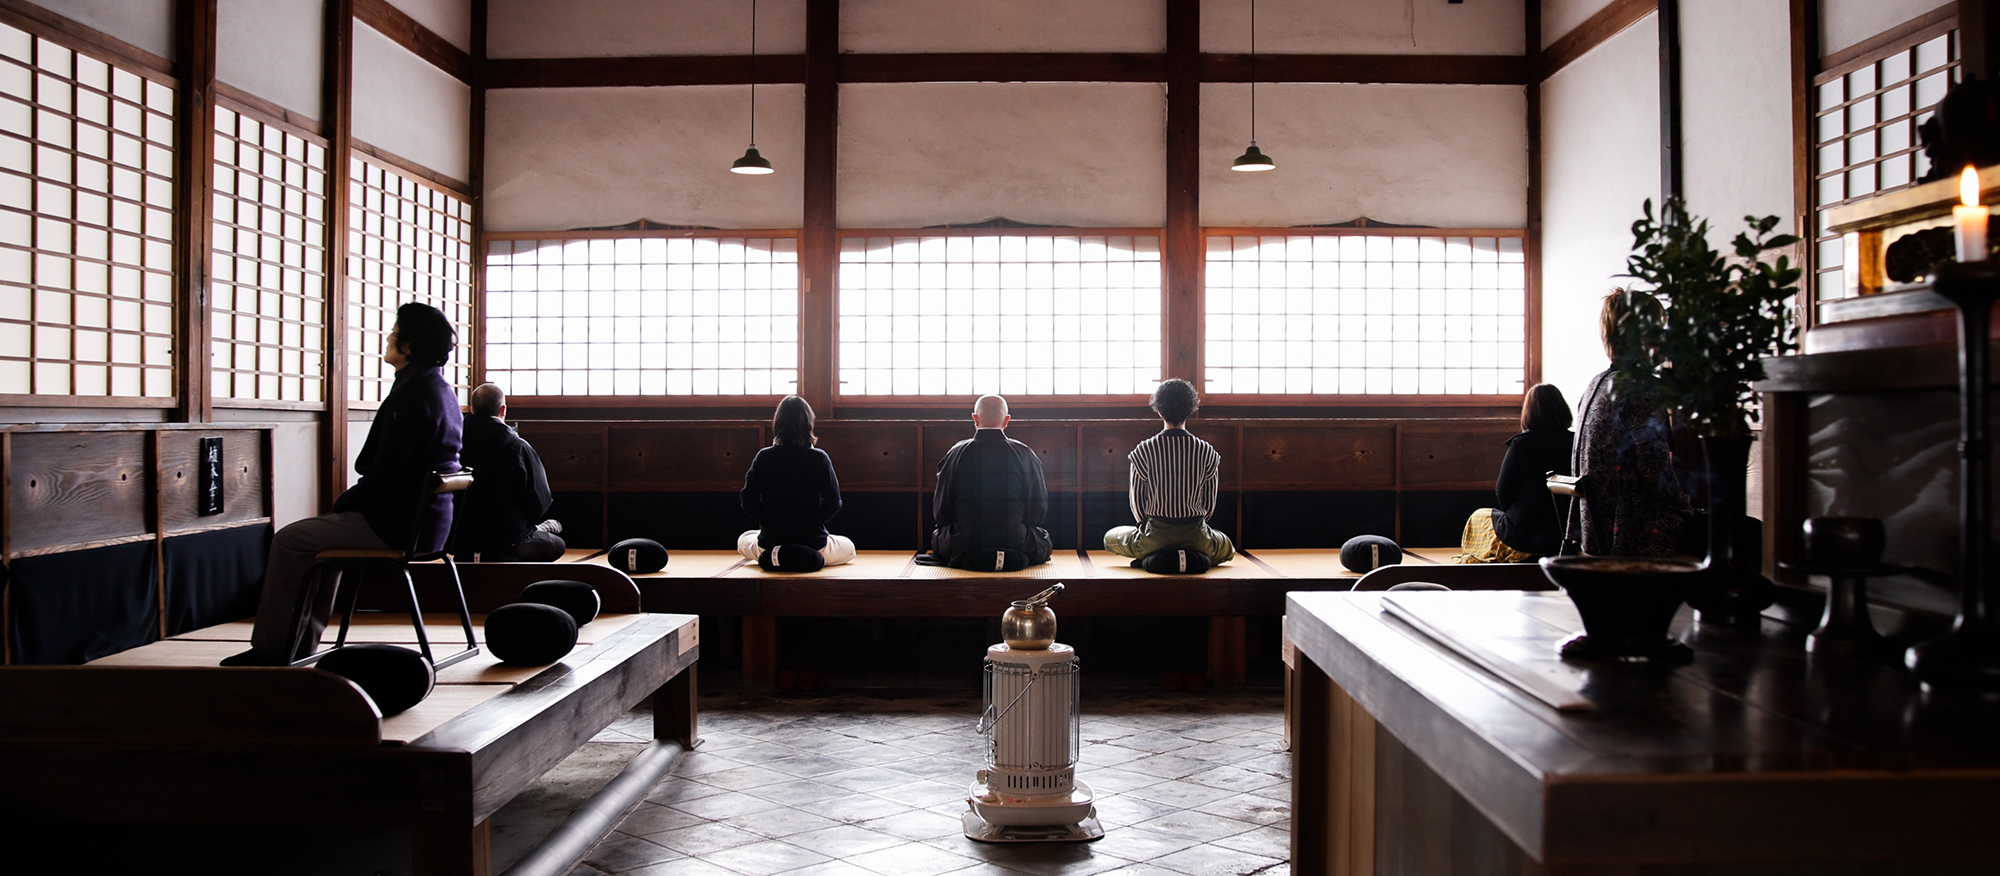 [Kyoto/Uji] Méditation zen et thé vert matcha à Koshoji, le plus ancien temple zen de l’école Soto, plus une expérience de calligraphie à l’encre exceptionnelle enseignée par un artiste réputé. -Temple Kousho-ji, le plus ancien temple zen Soto parmi plus de 14 000 temples zen Soto au Japon.